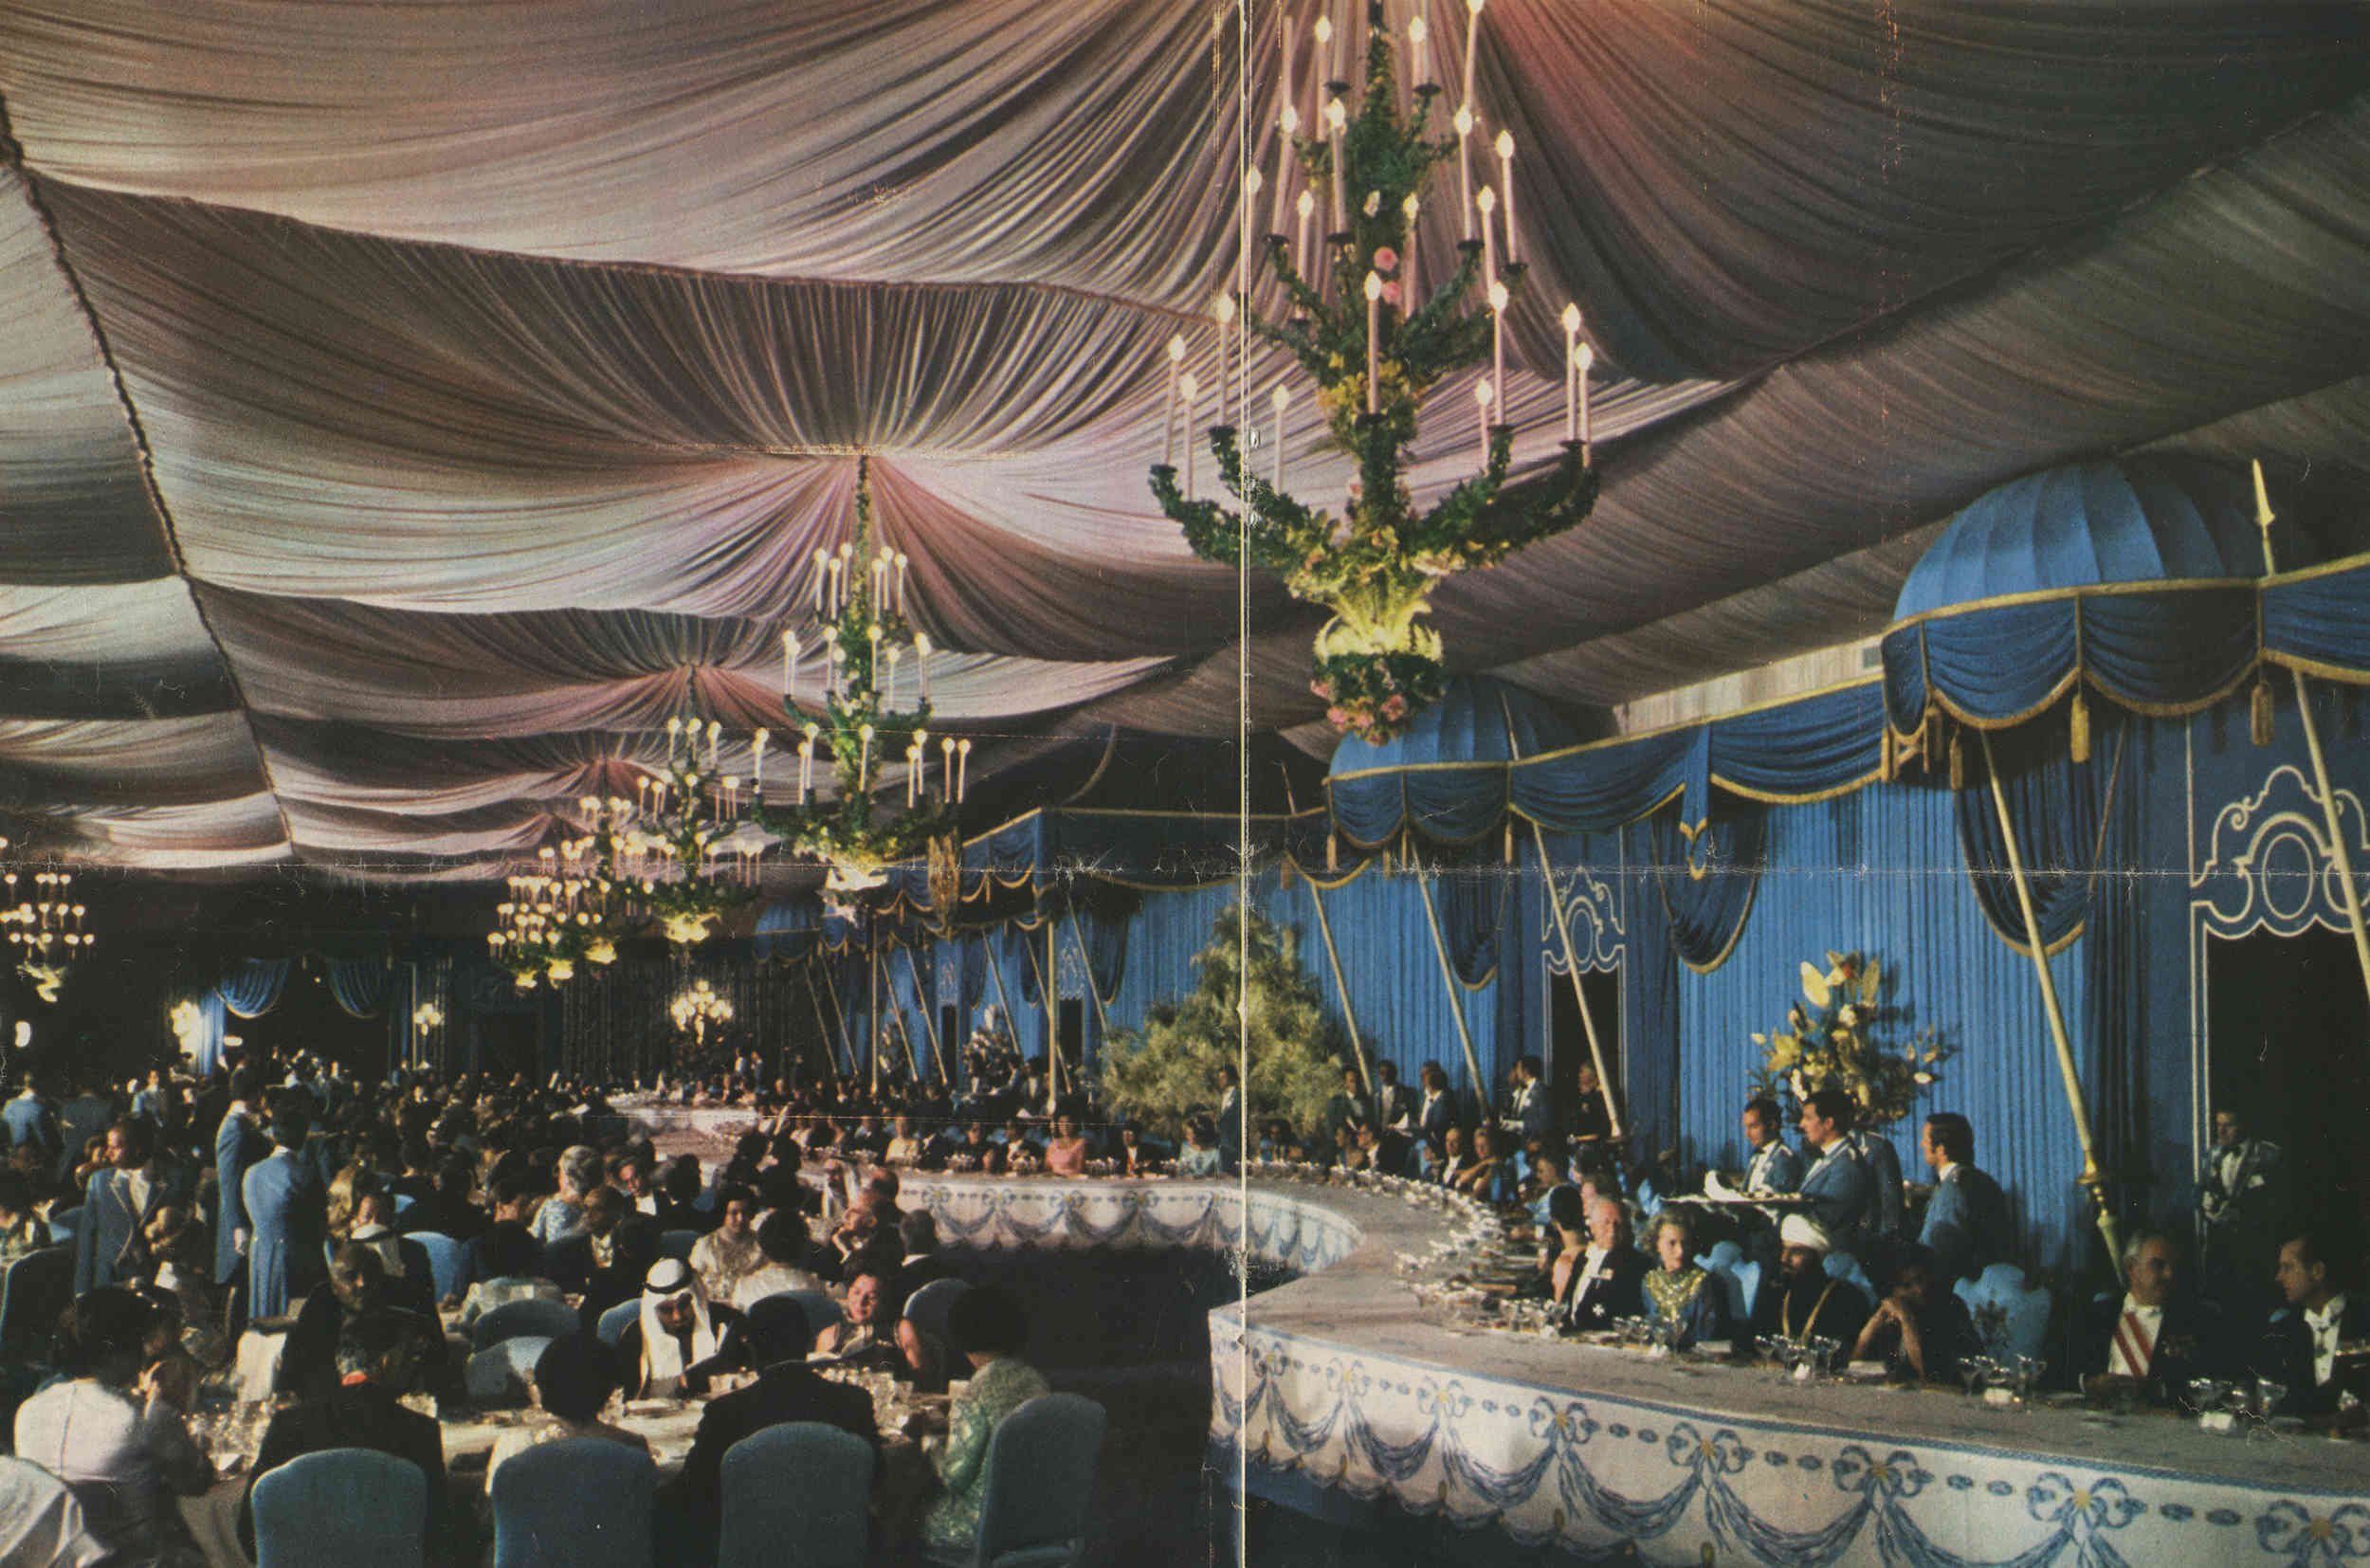 Dinner mit Königen und Staatsoberhäuptern beim Fest des Schahs von Persien zur Feier des 2500. Jubiläums des persischen Kaiserreichs, Oktober 1971